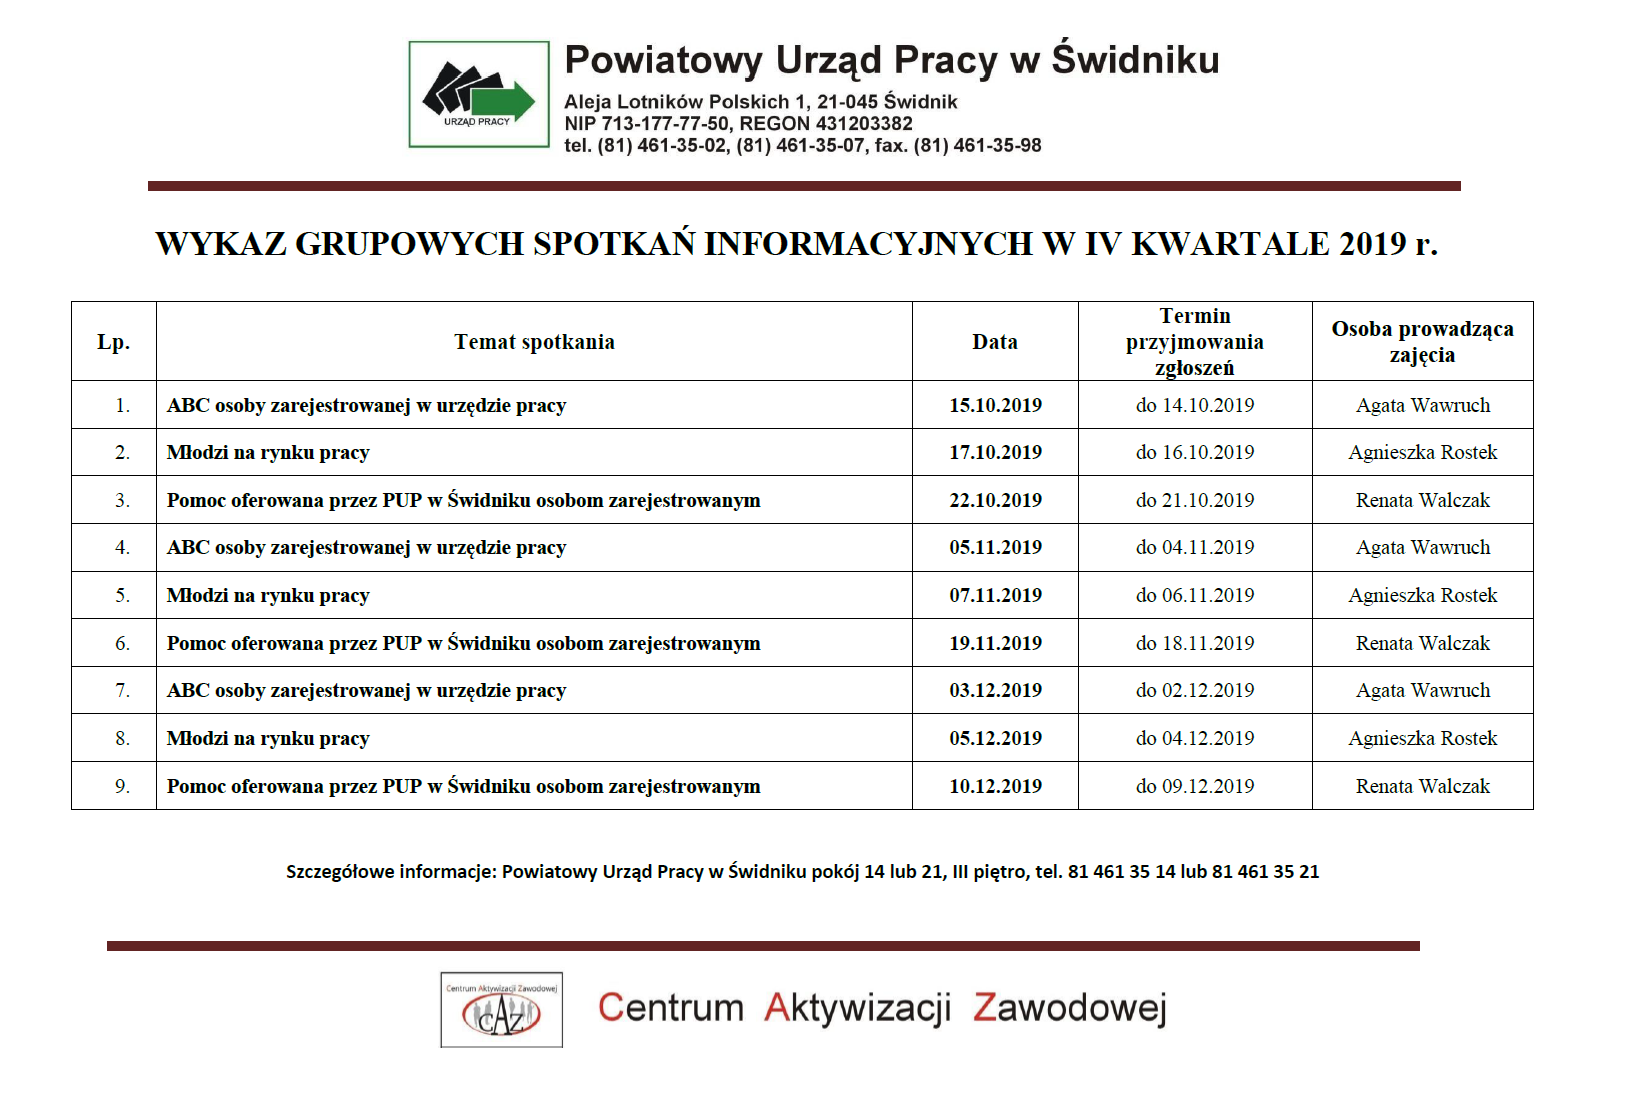 INFORMACJA ZAWODOWA IV KW. 2019